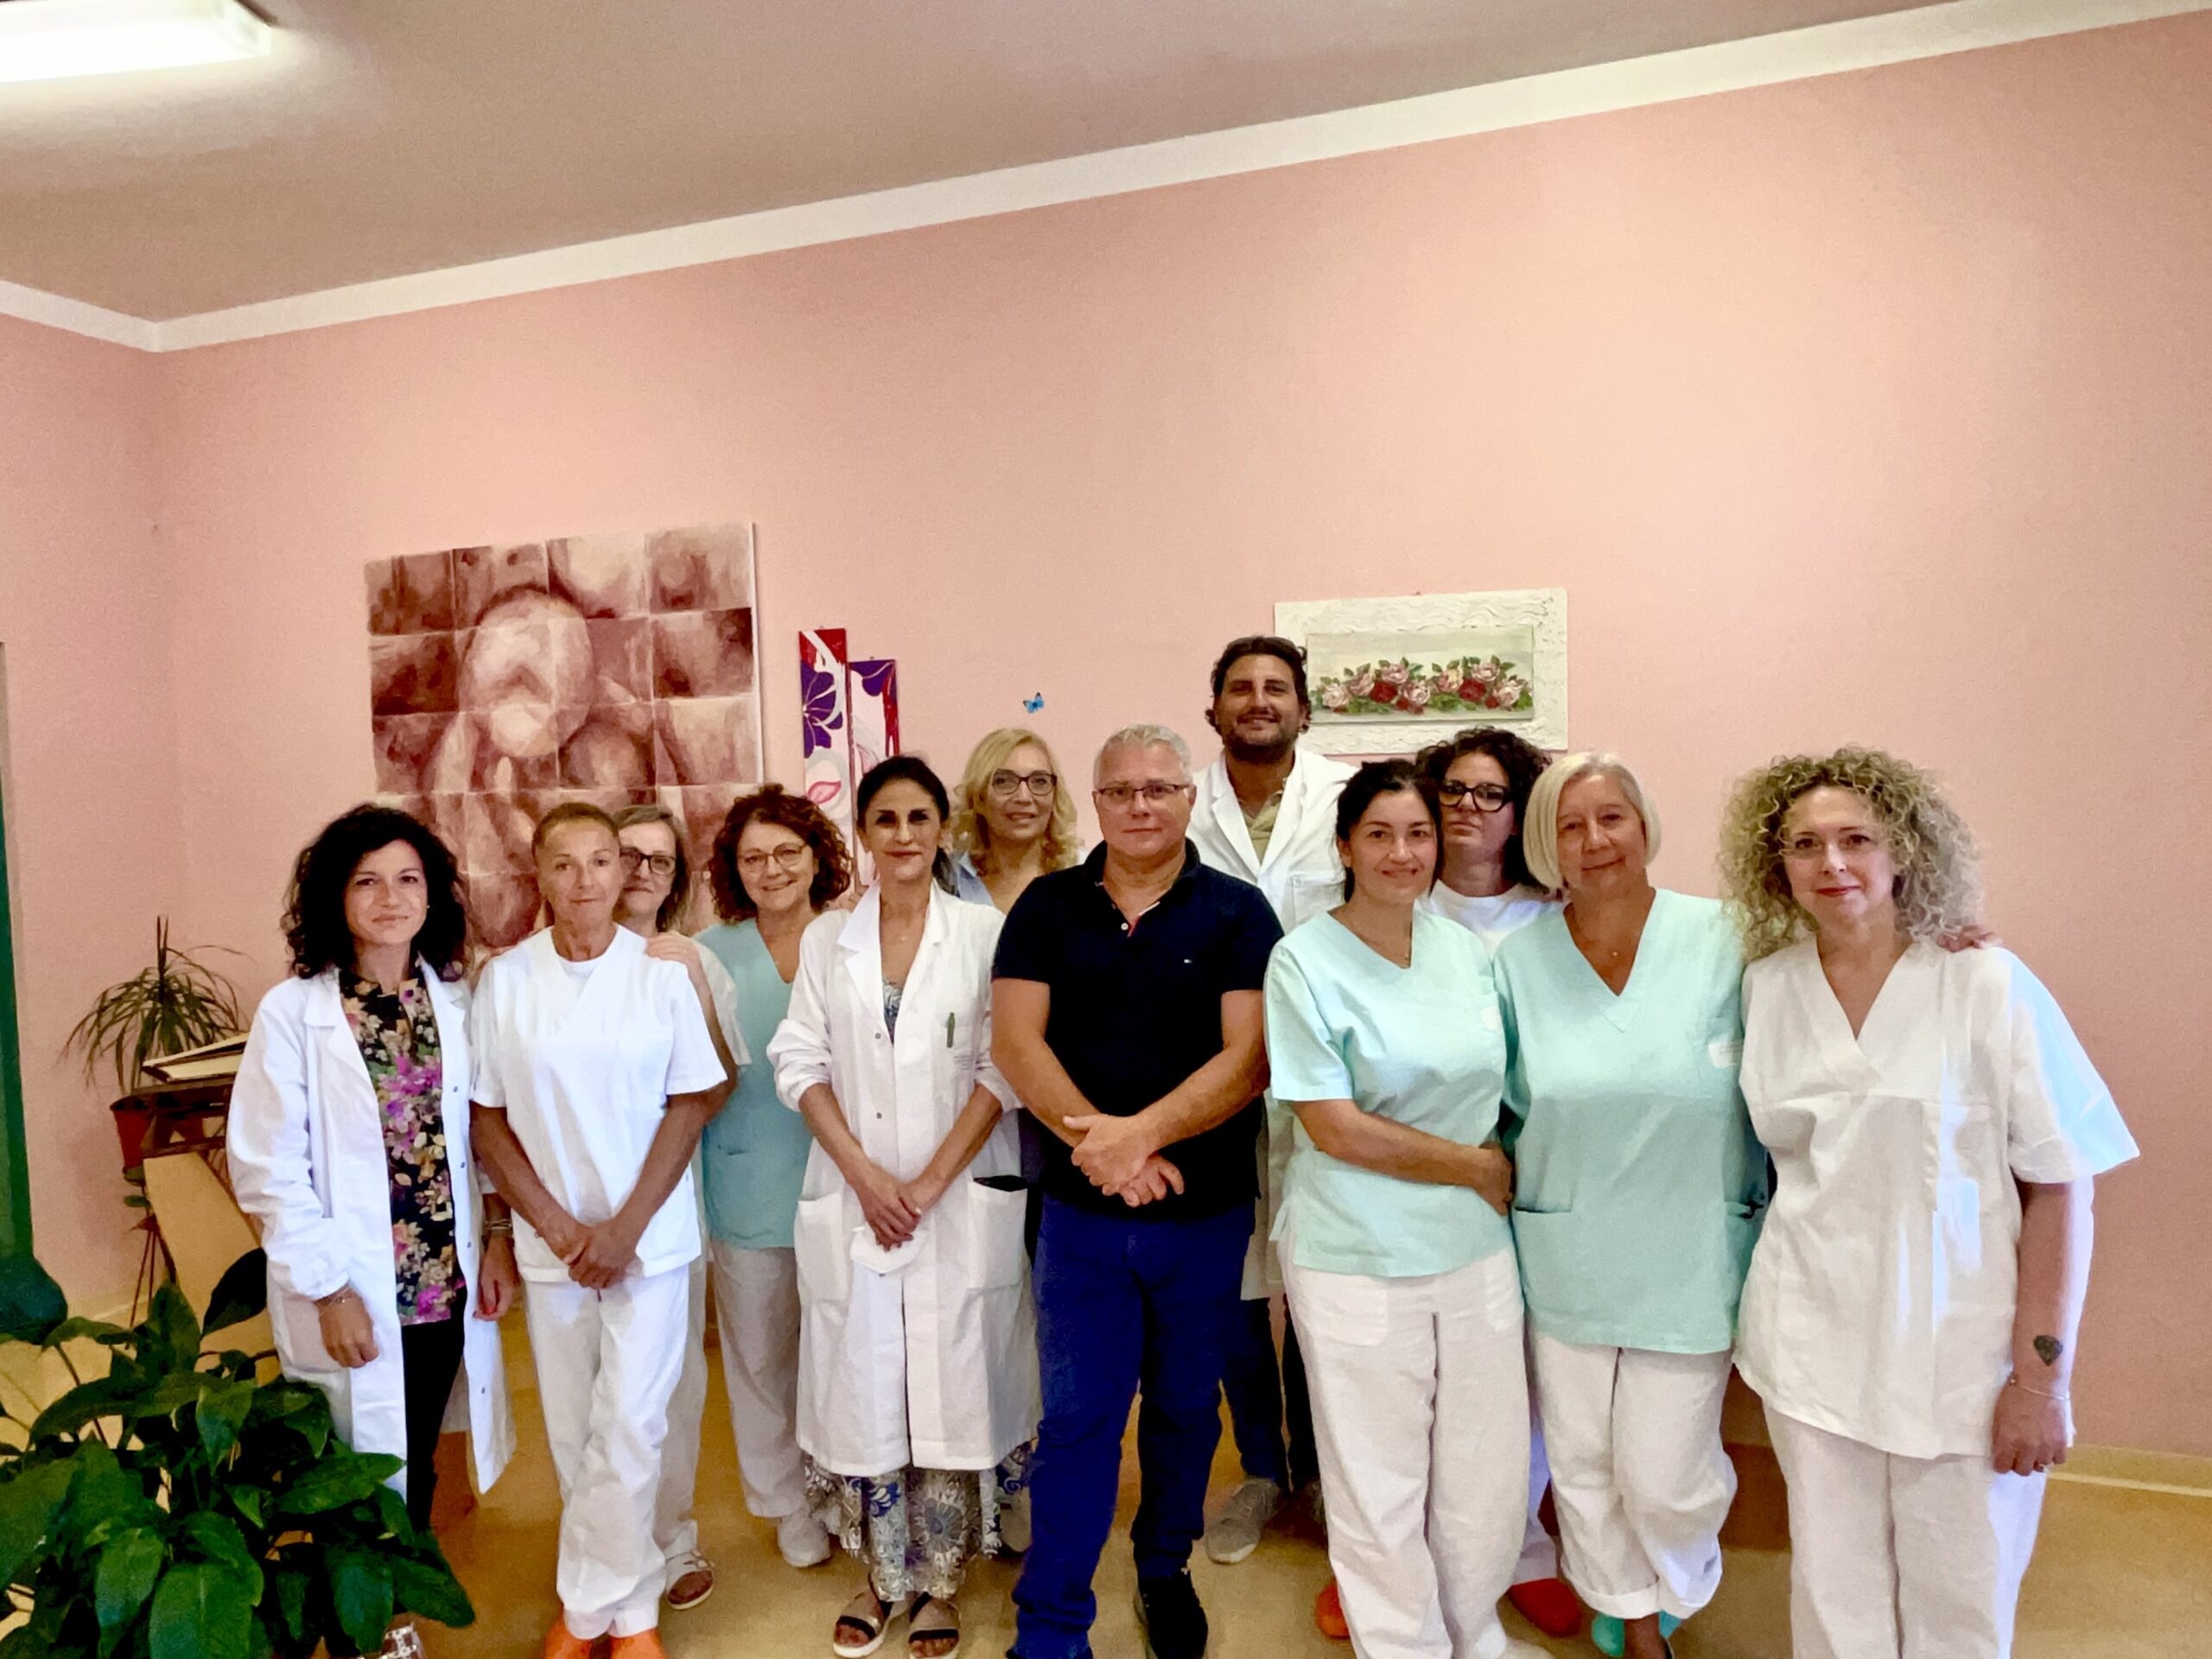 L’hospice di Montegranaro tra i migliori d’Europa